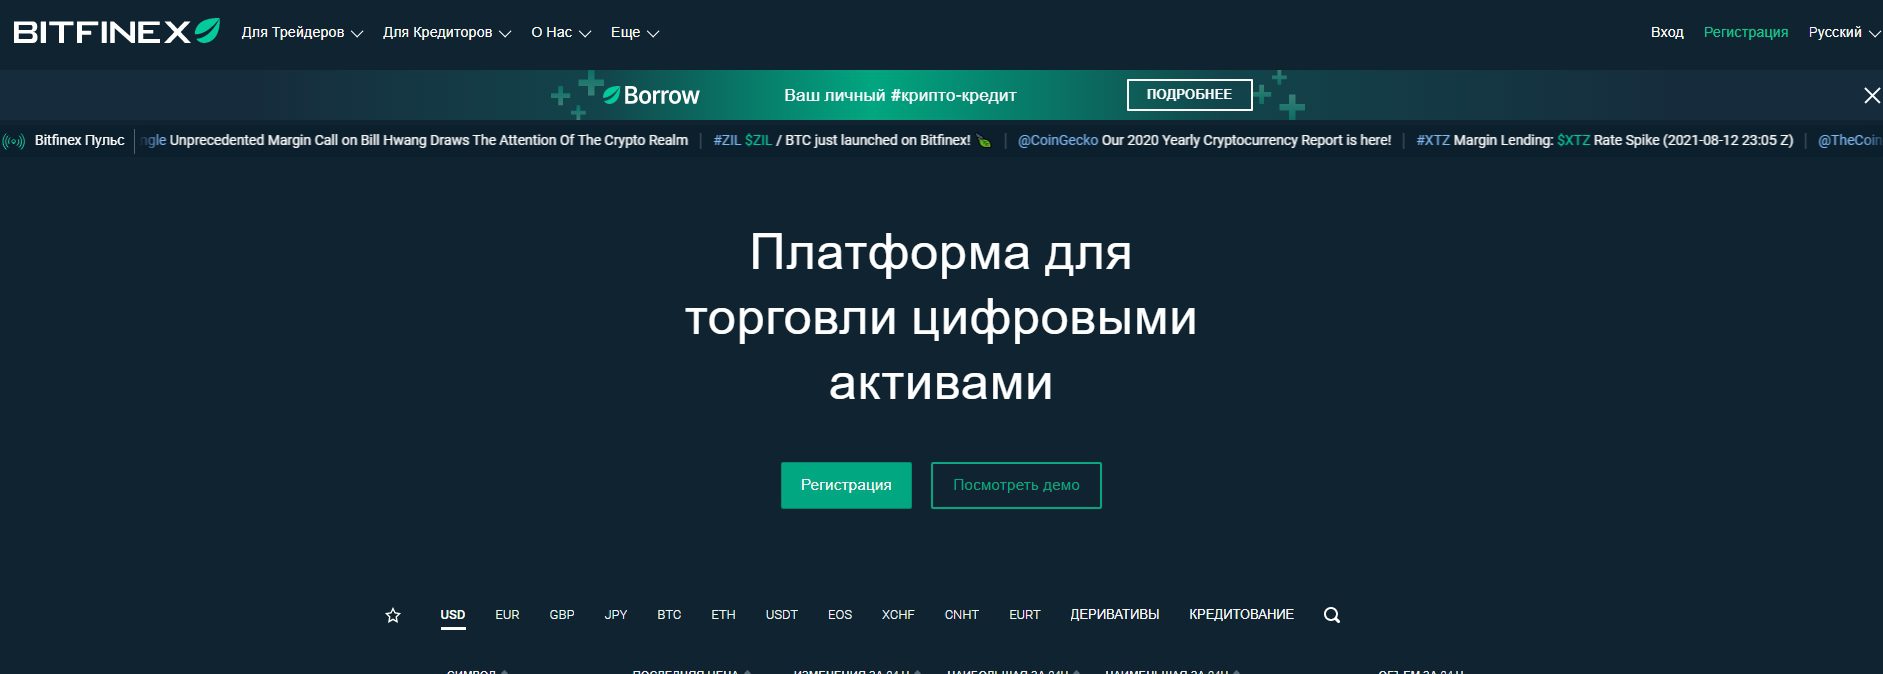 Сайт трейдера Bitfinex